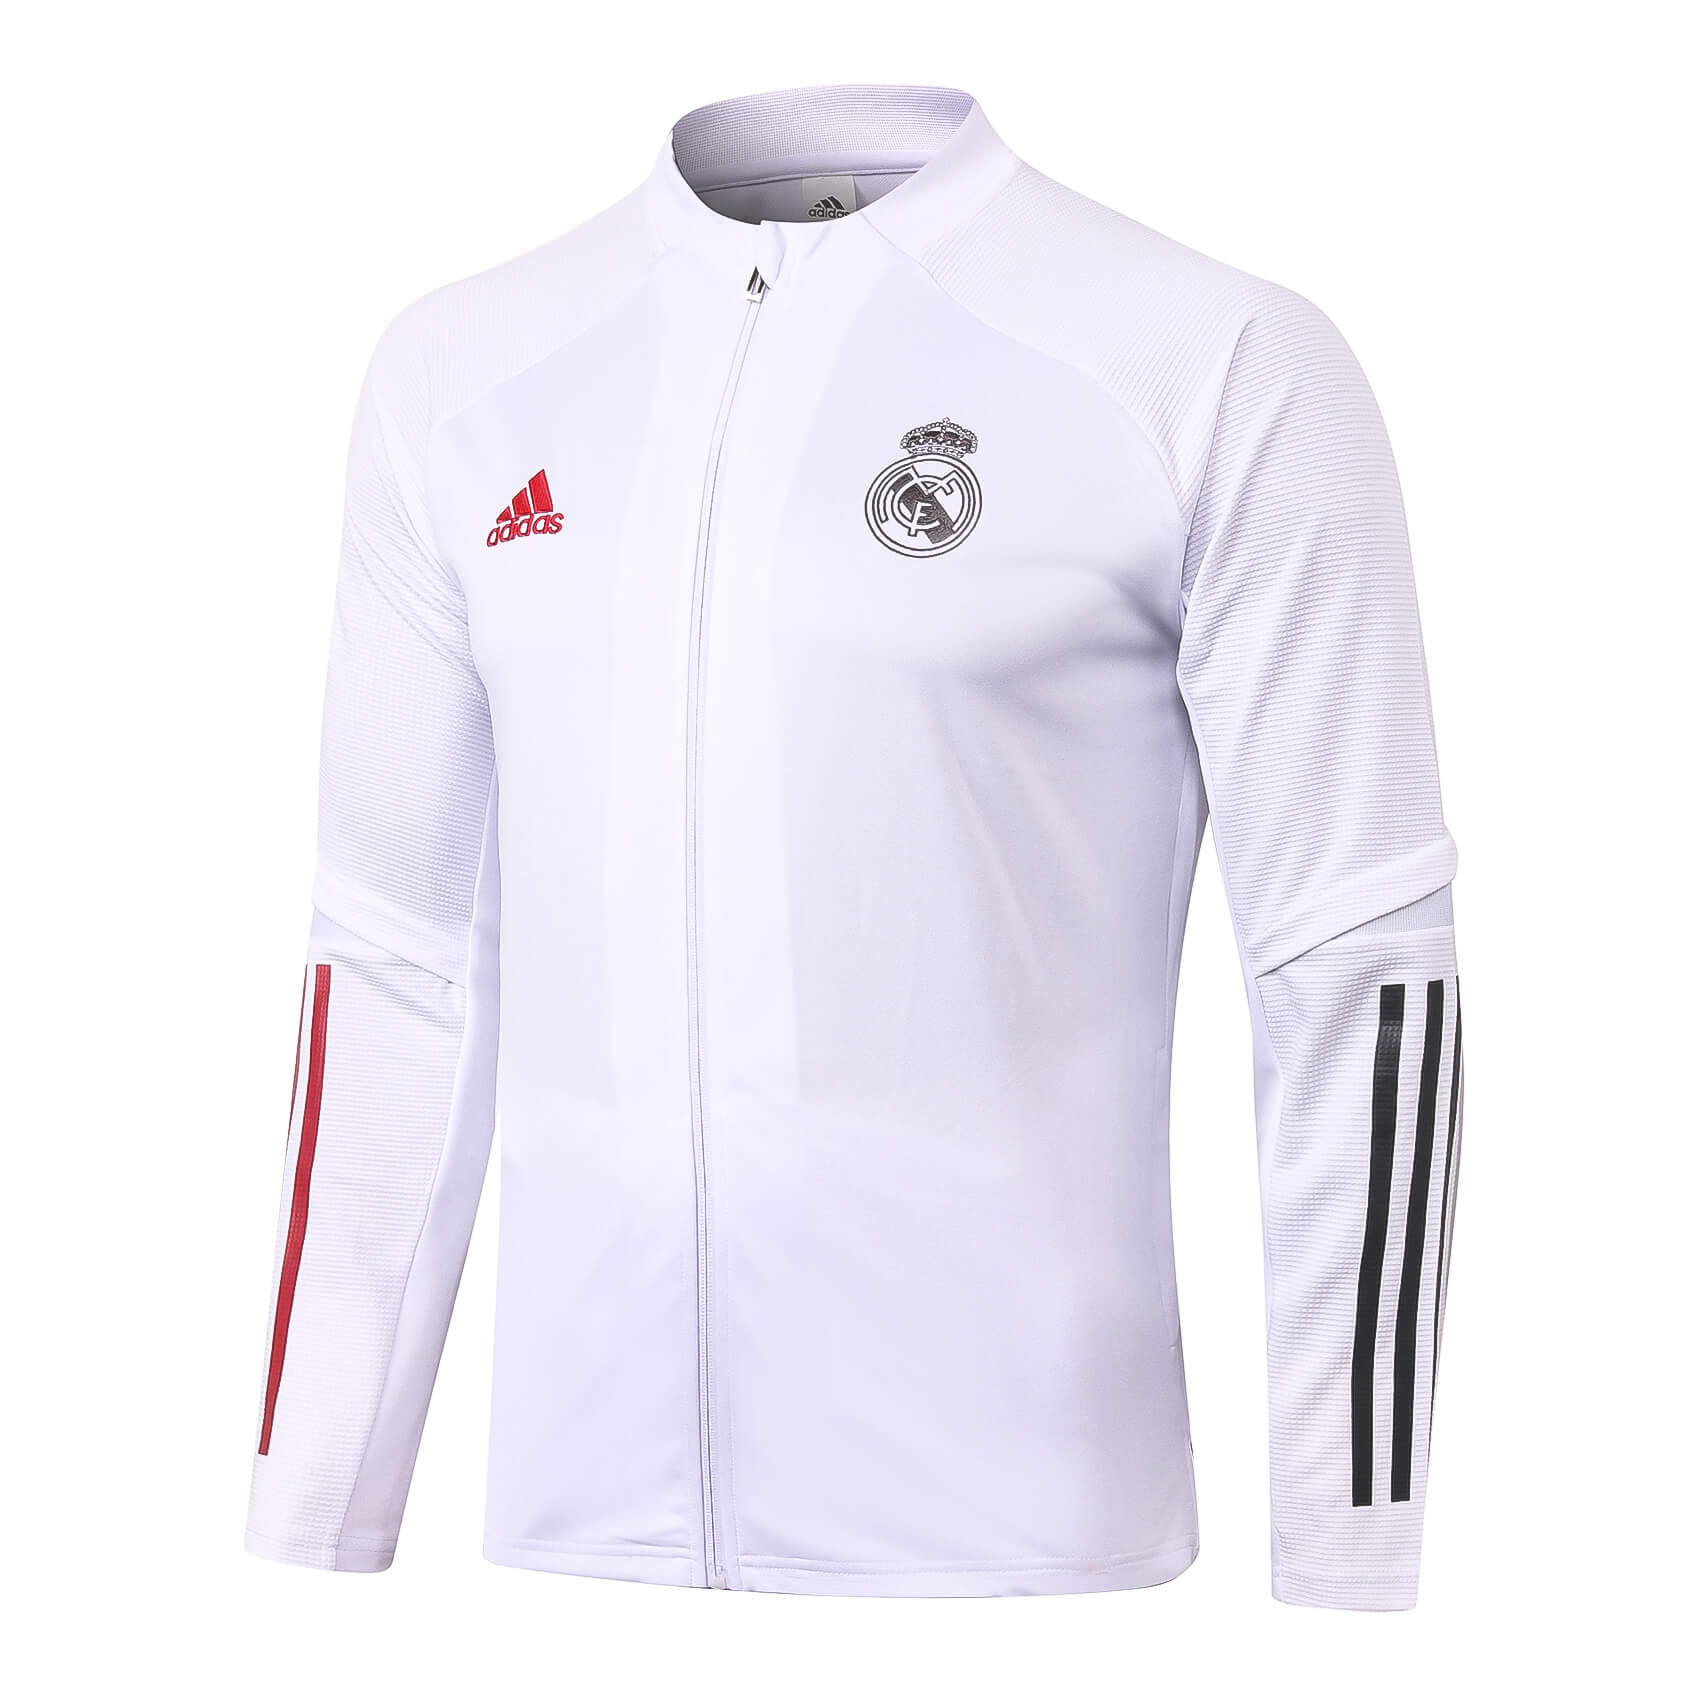 Real Madrid Tracksuit Jacket 2020 2021 – White